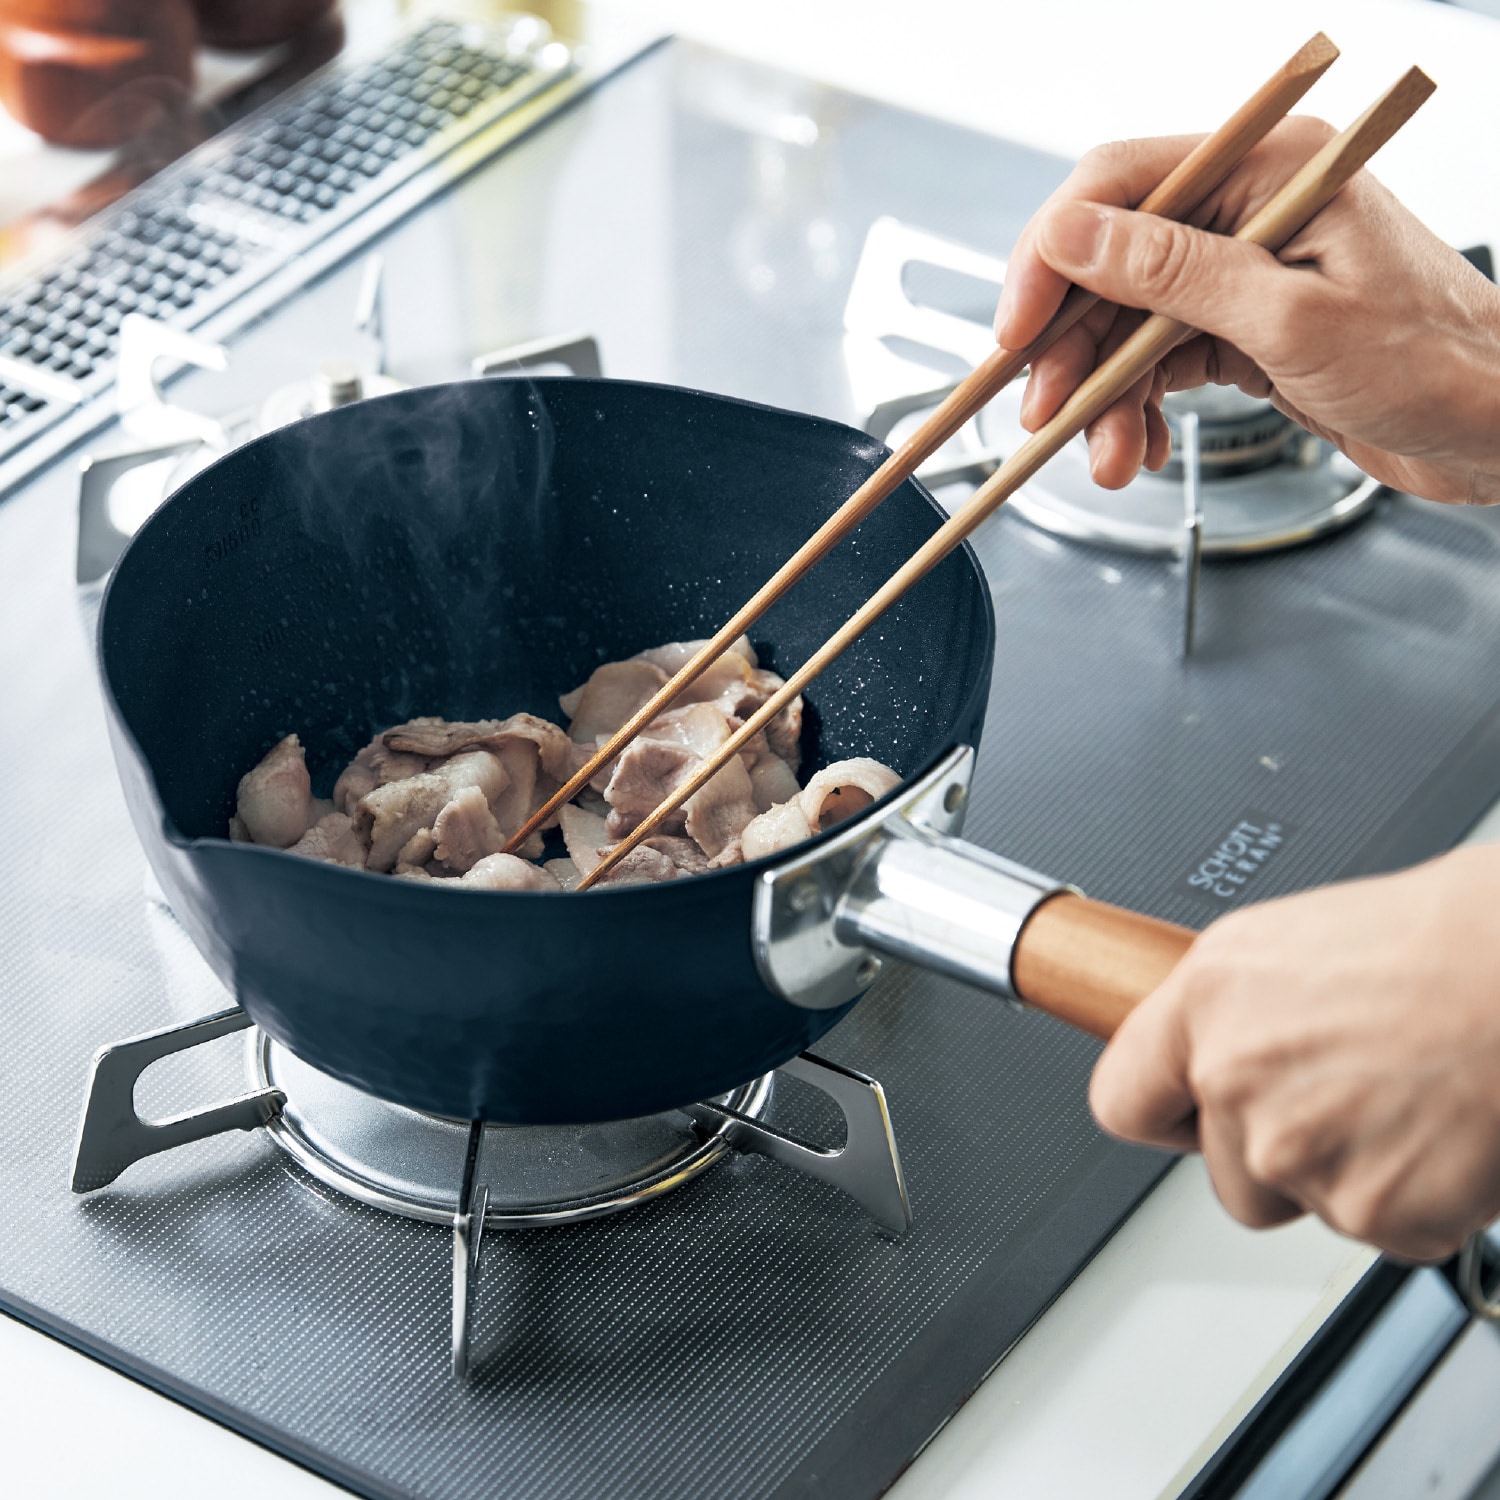 【BELLE MAISON DAYS】家族が喜ぶ焼く・煮る・揚げる雪平鍋(ガス火専用)[日本製] 【径約20cm】画像